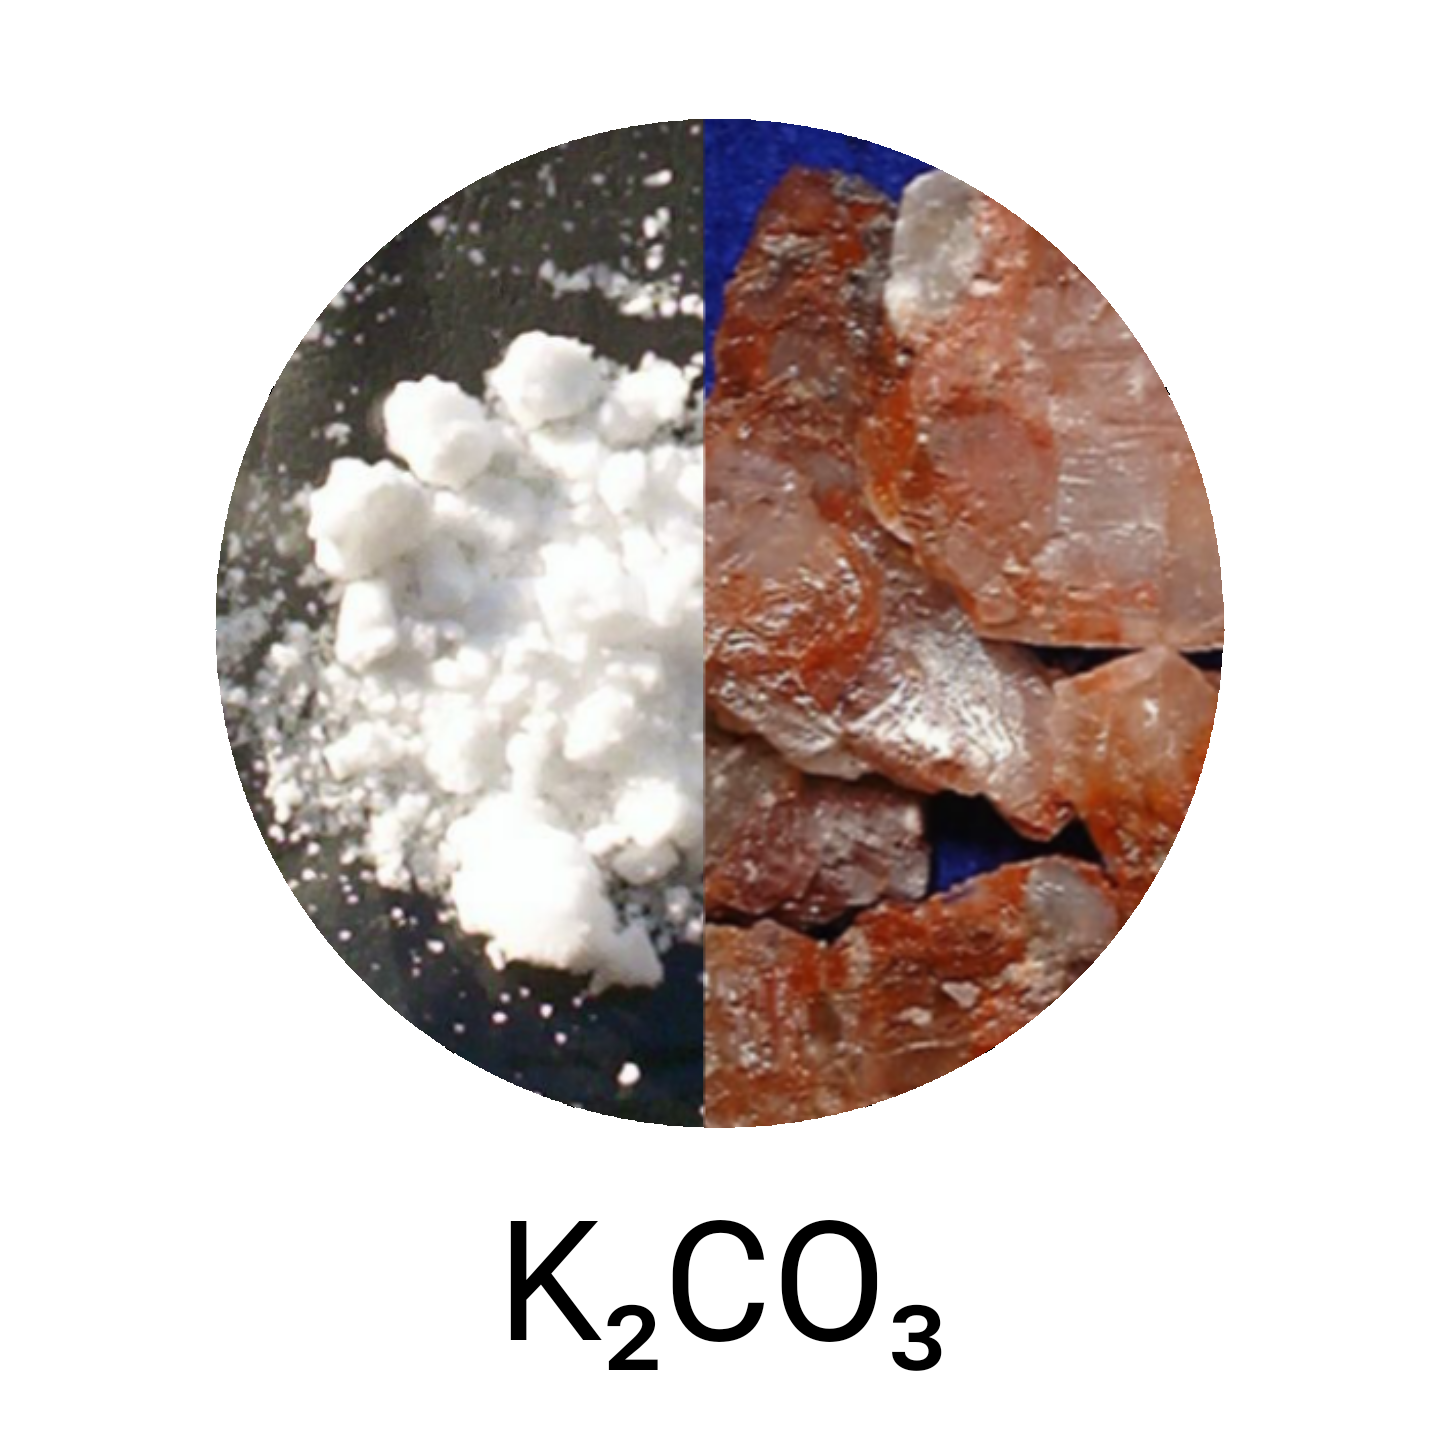 K2co3 это соль